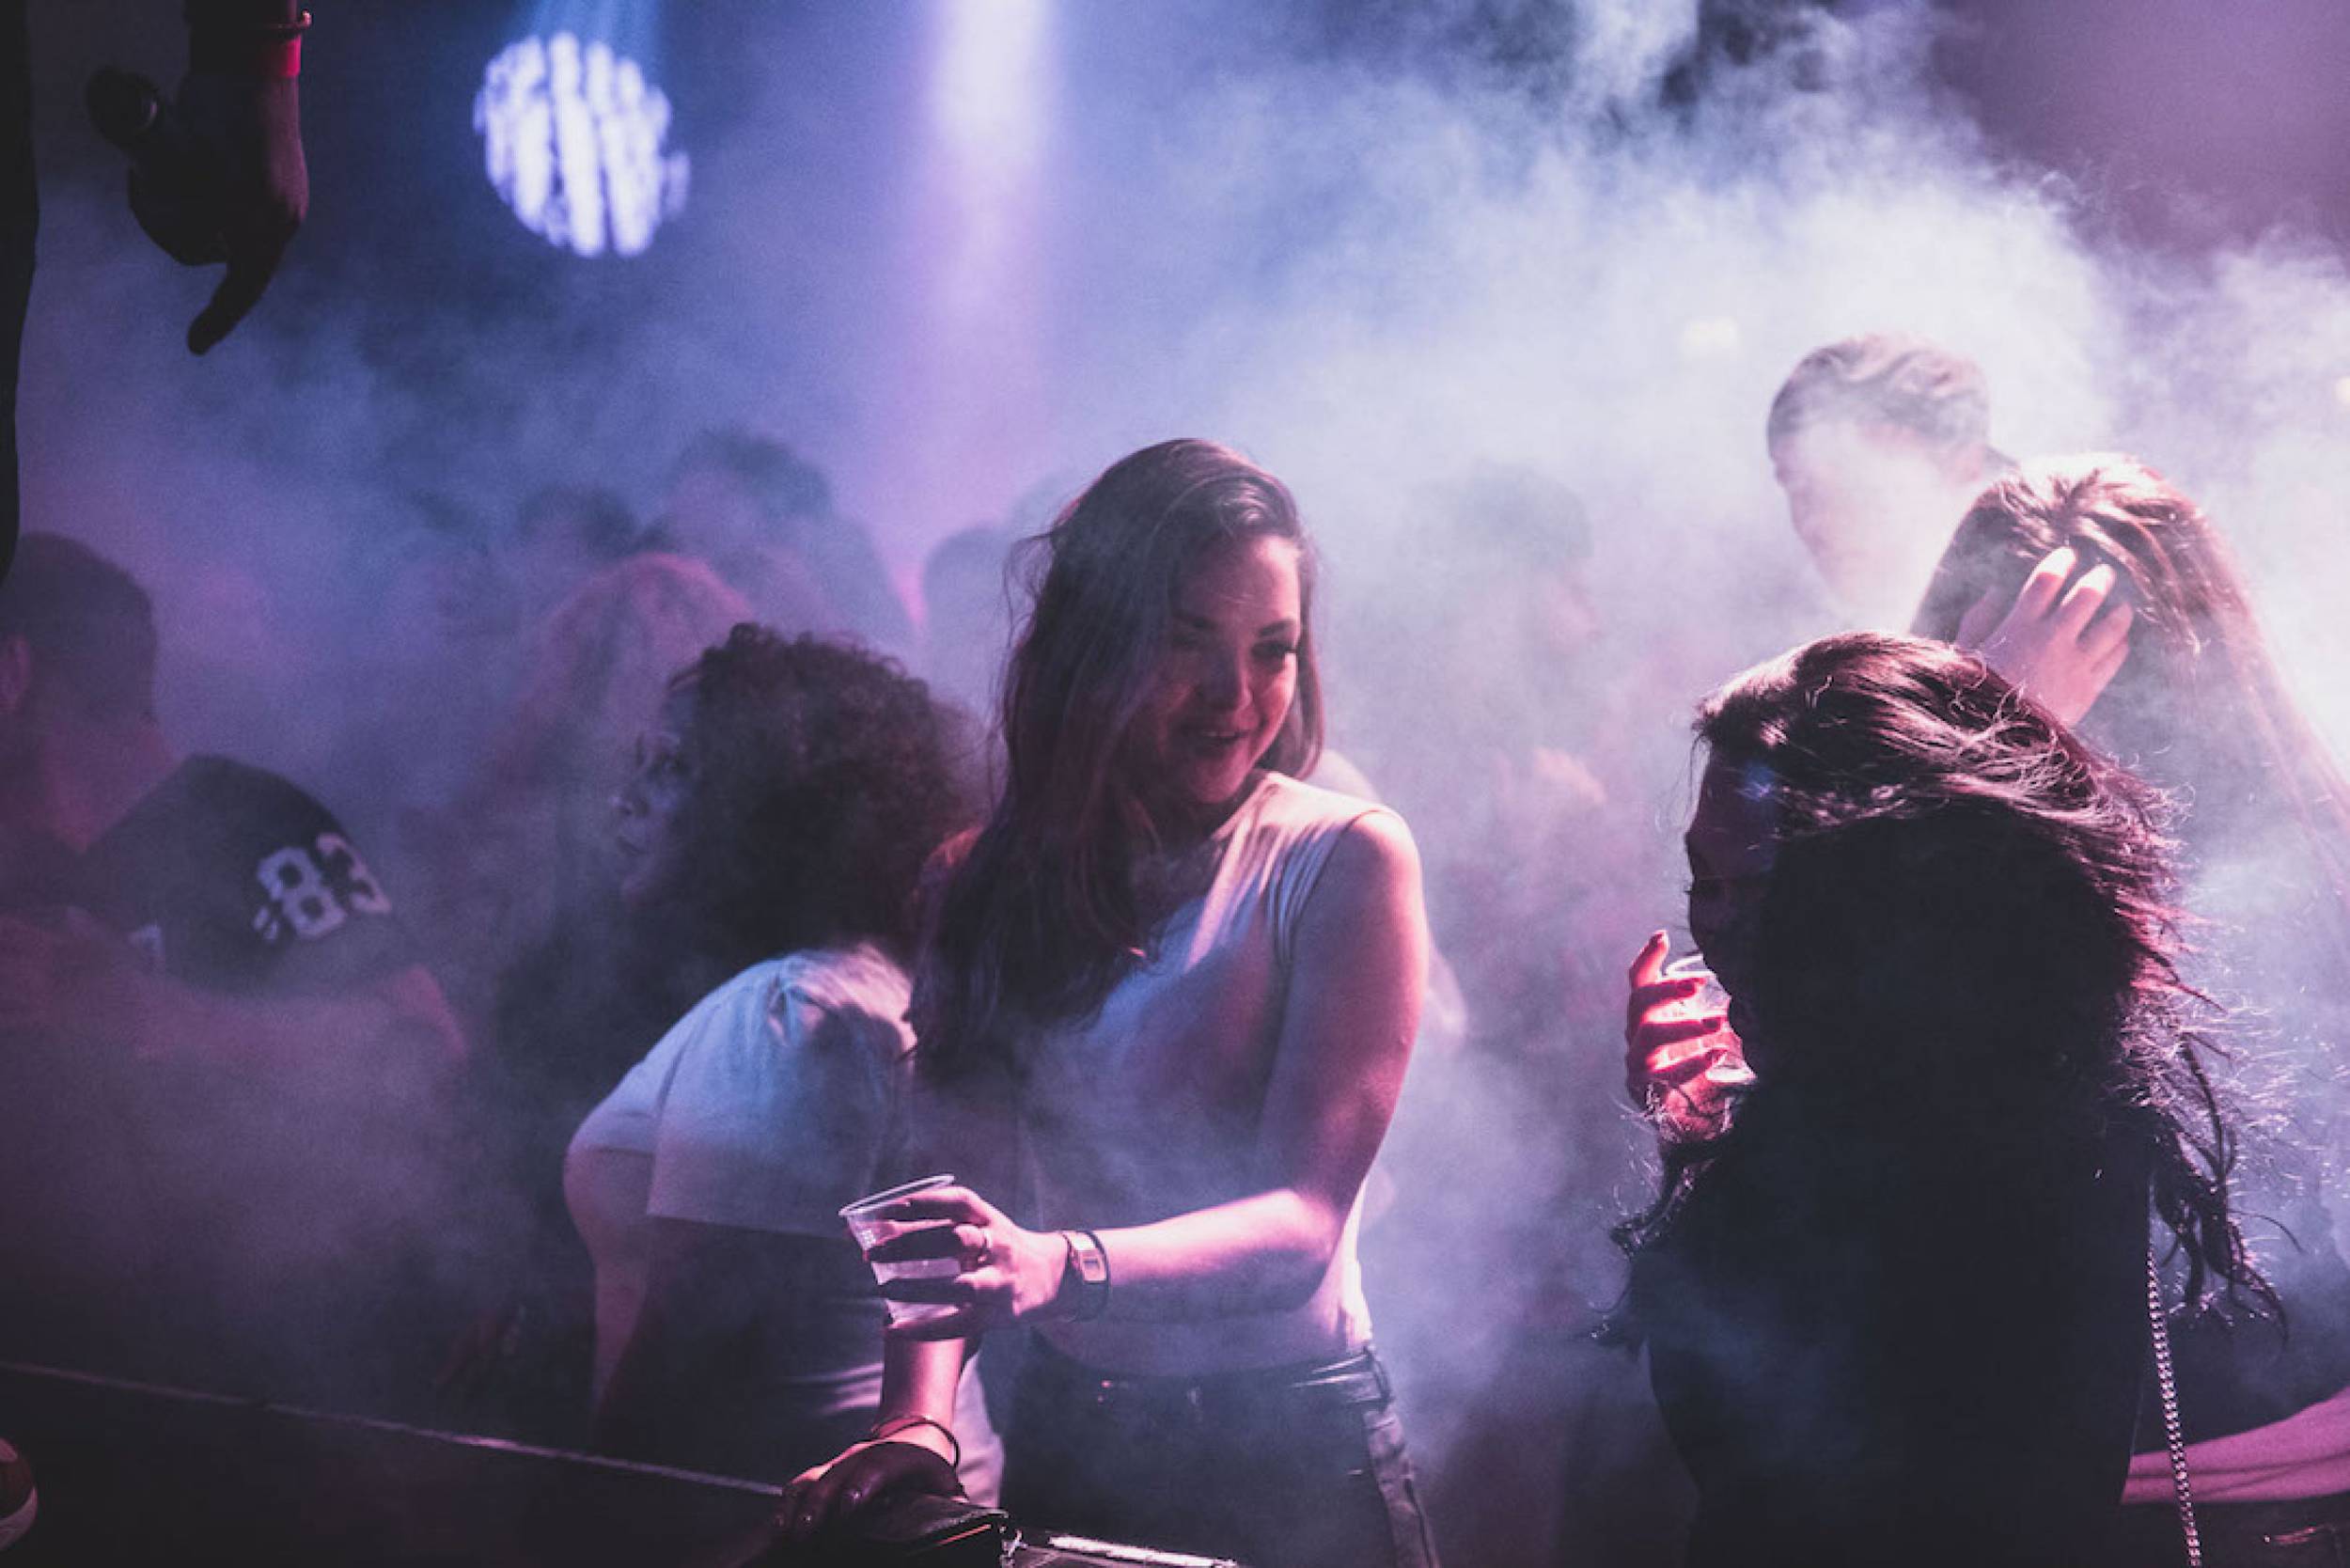 vrouwen-dansen-rook-club-nijmegen_SFtgAGt7K.jpg